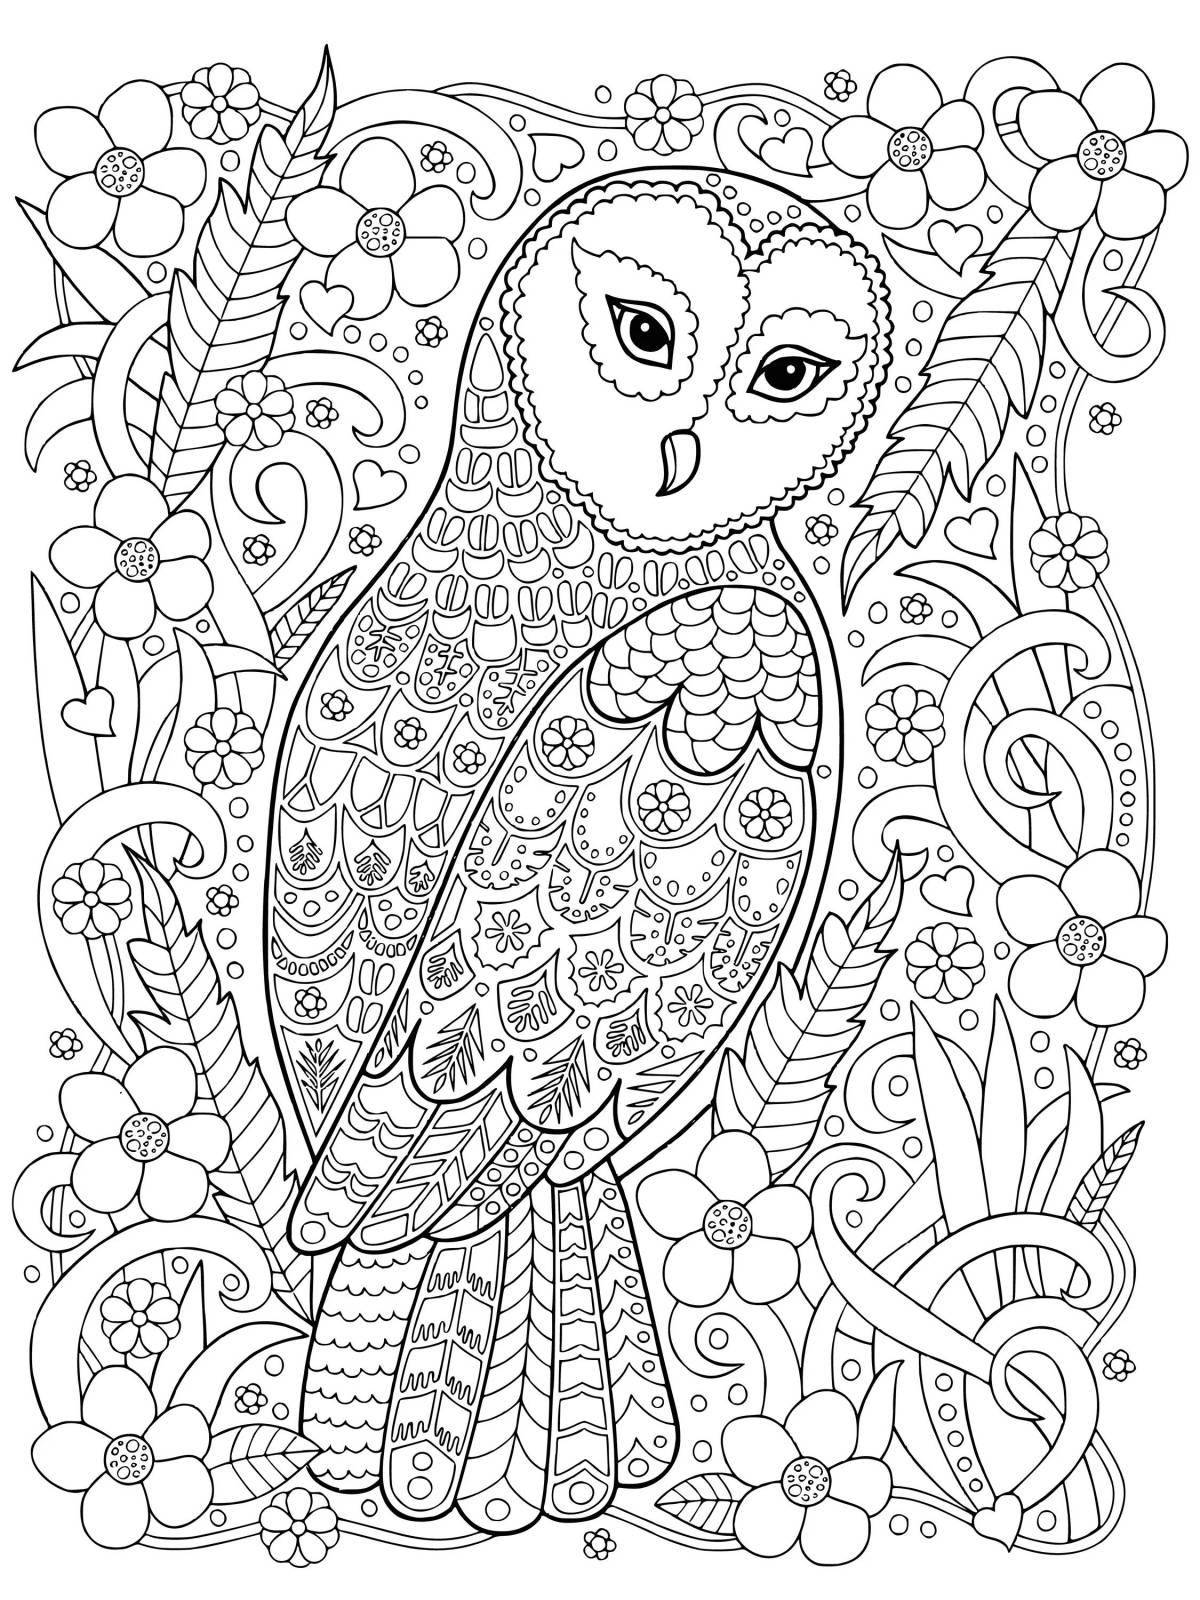 Violent coloring complex owl